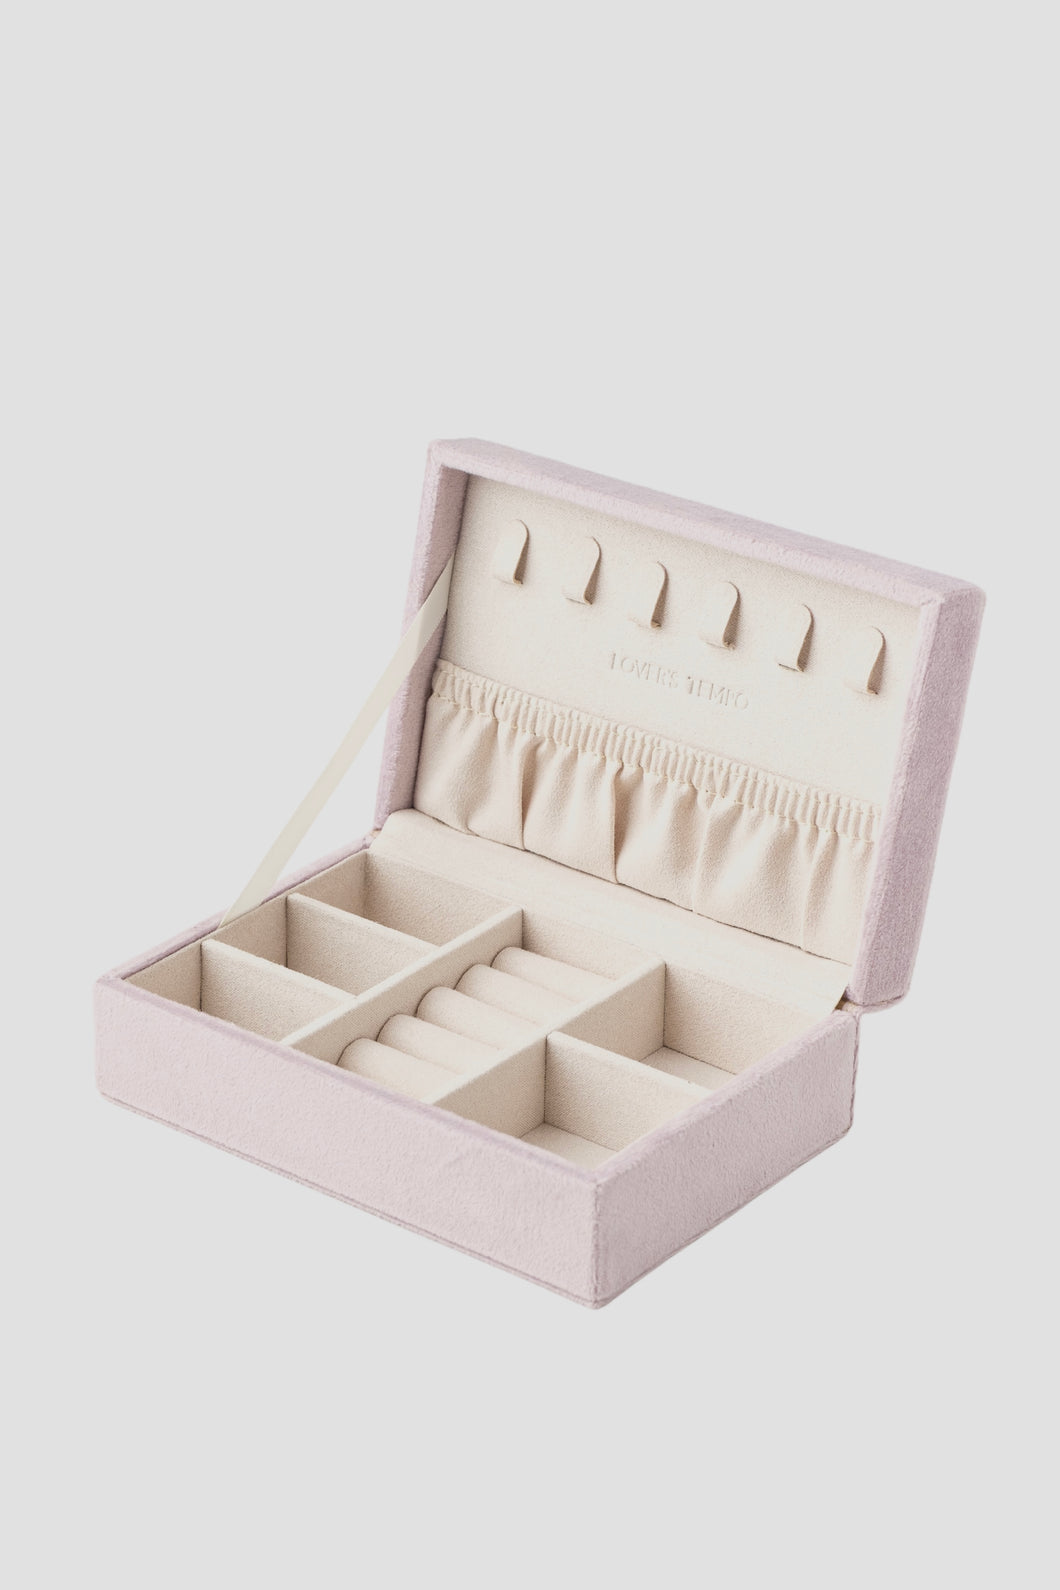 6” Bijoux Jewelry Box - Lilac